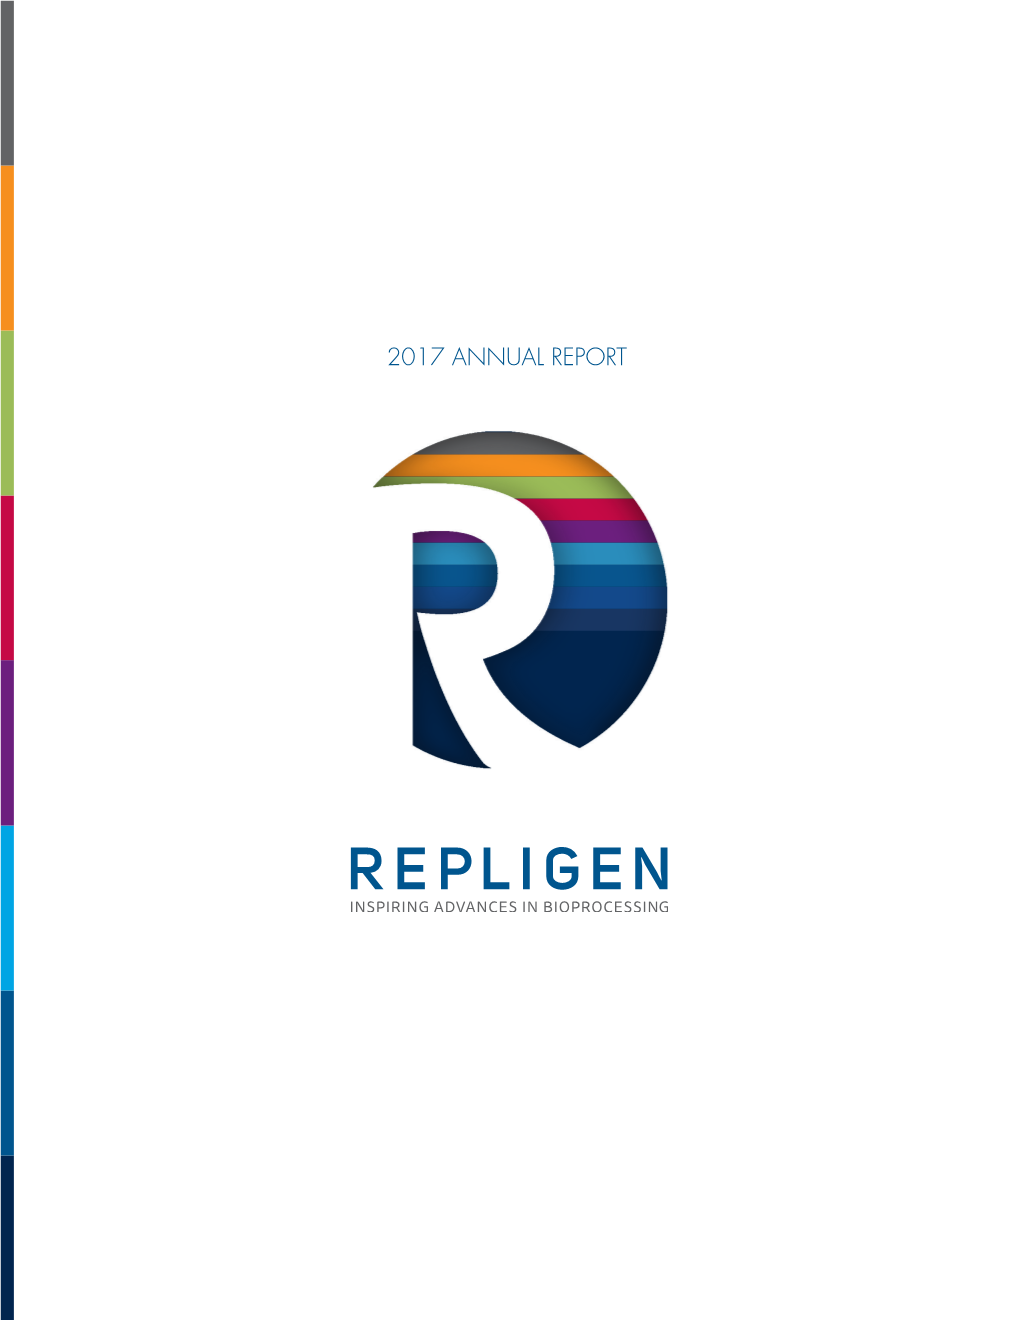 Repligen Corporation 2017 Annual Report